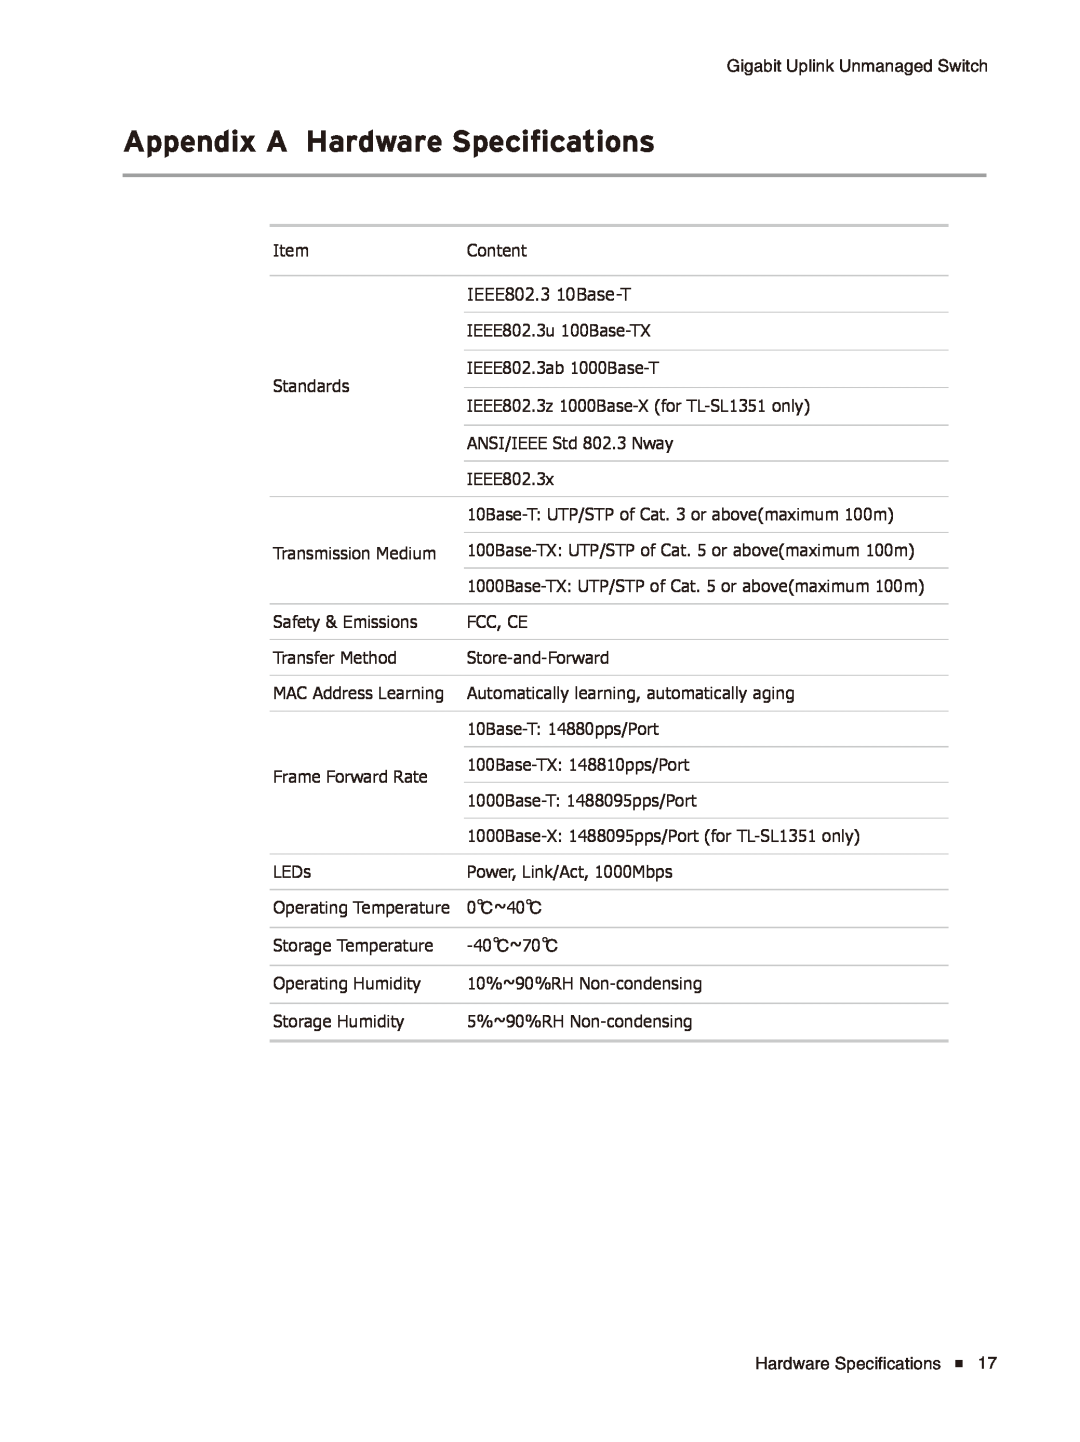 TP-Link TL-SL1226/TL-SL1351 manual Appendix A Hardware Specifications 